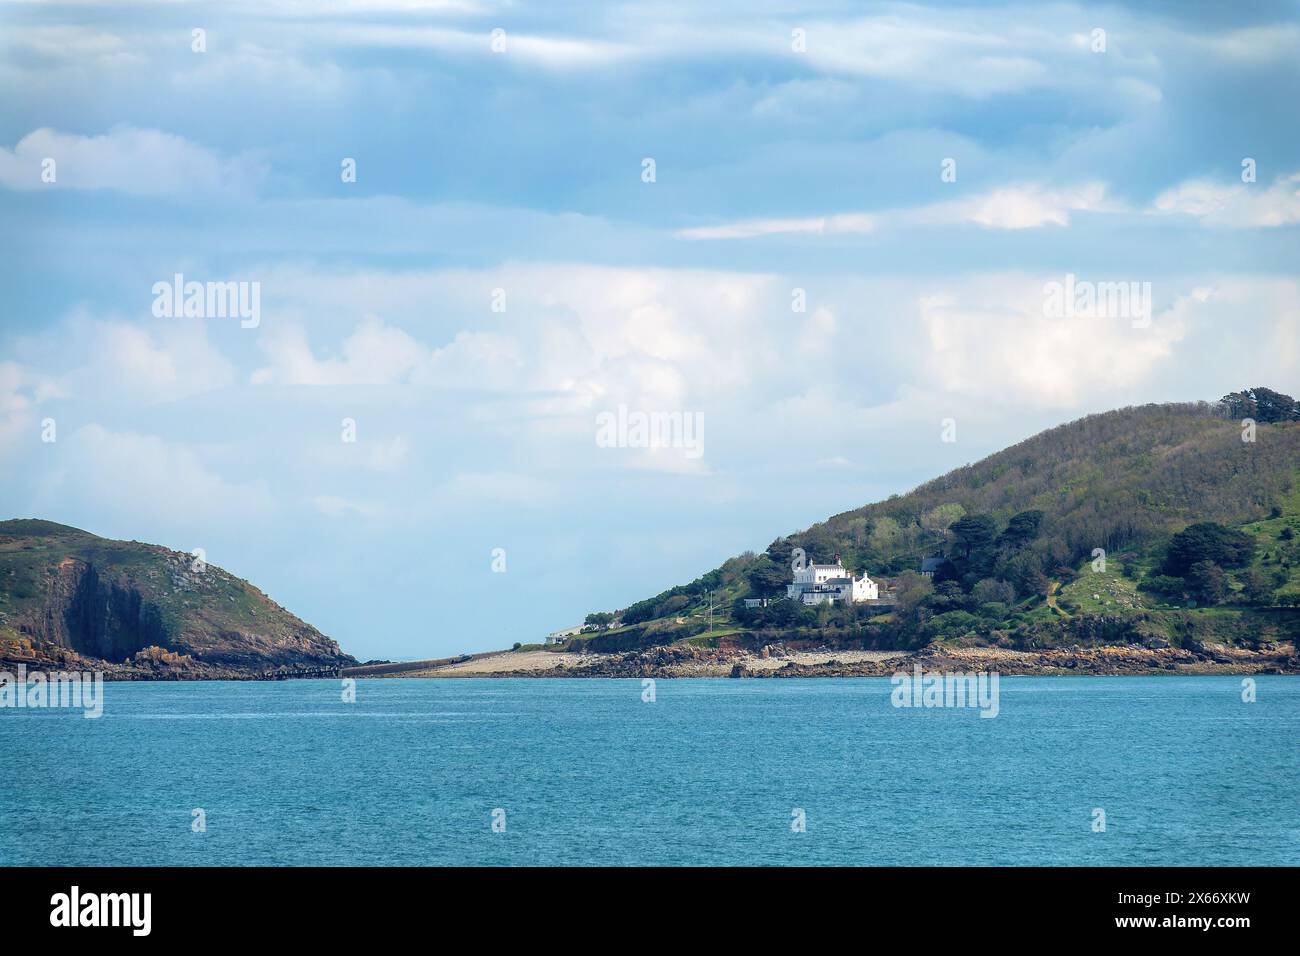 Vue d'une maison blanche sur l'île de Sark depuis la mer, les îles Anglo-Normandes Banque D'Images